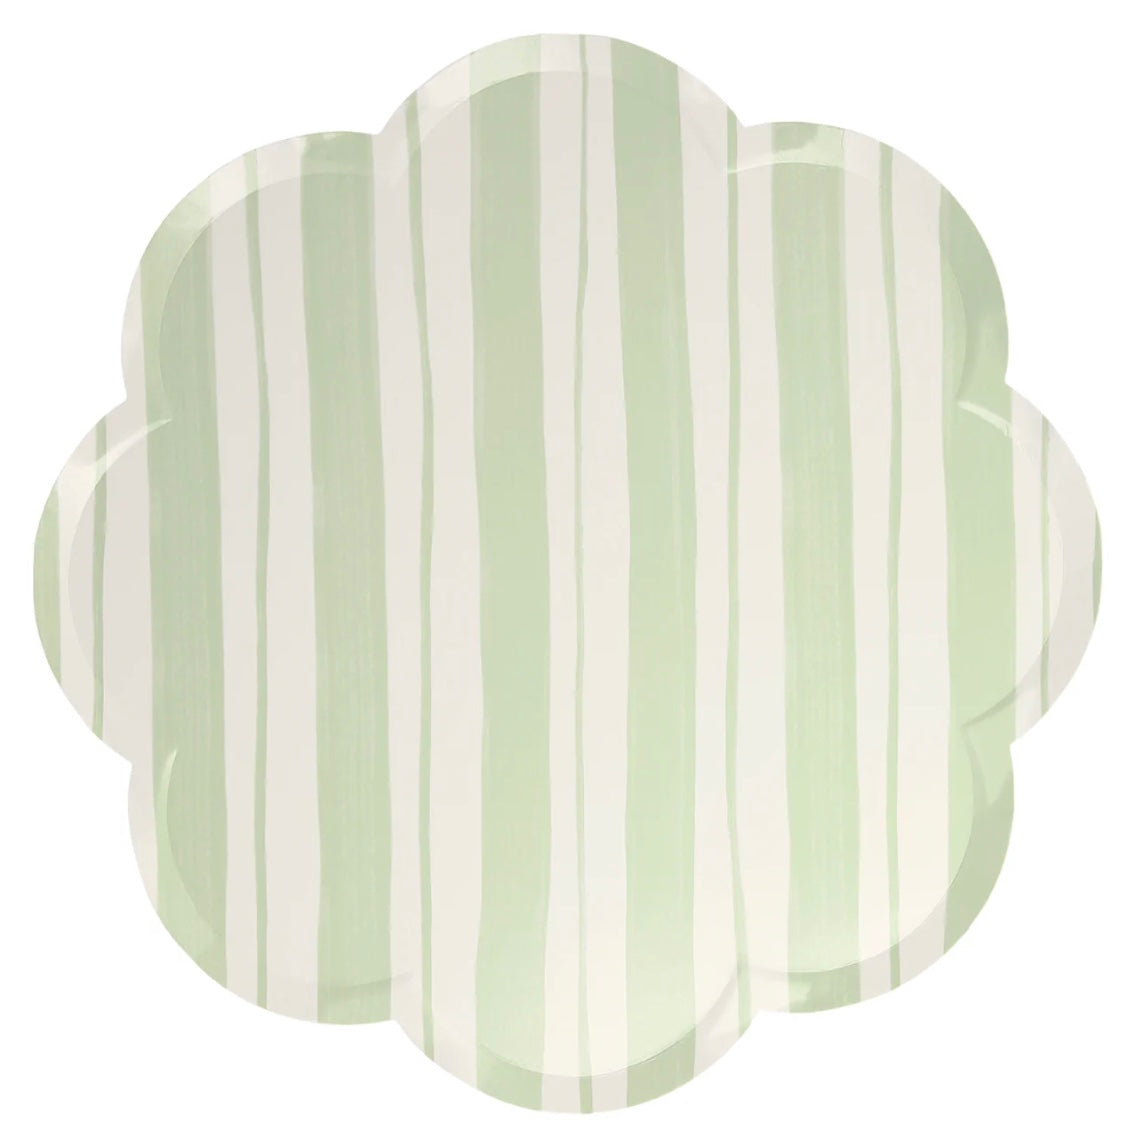 Meri Meri ticking stripe dinner paper plates easter spring party green pink blue pastel 